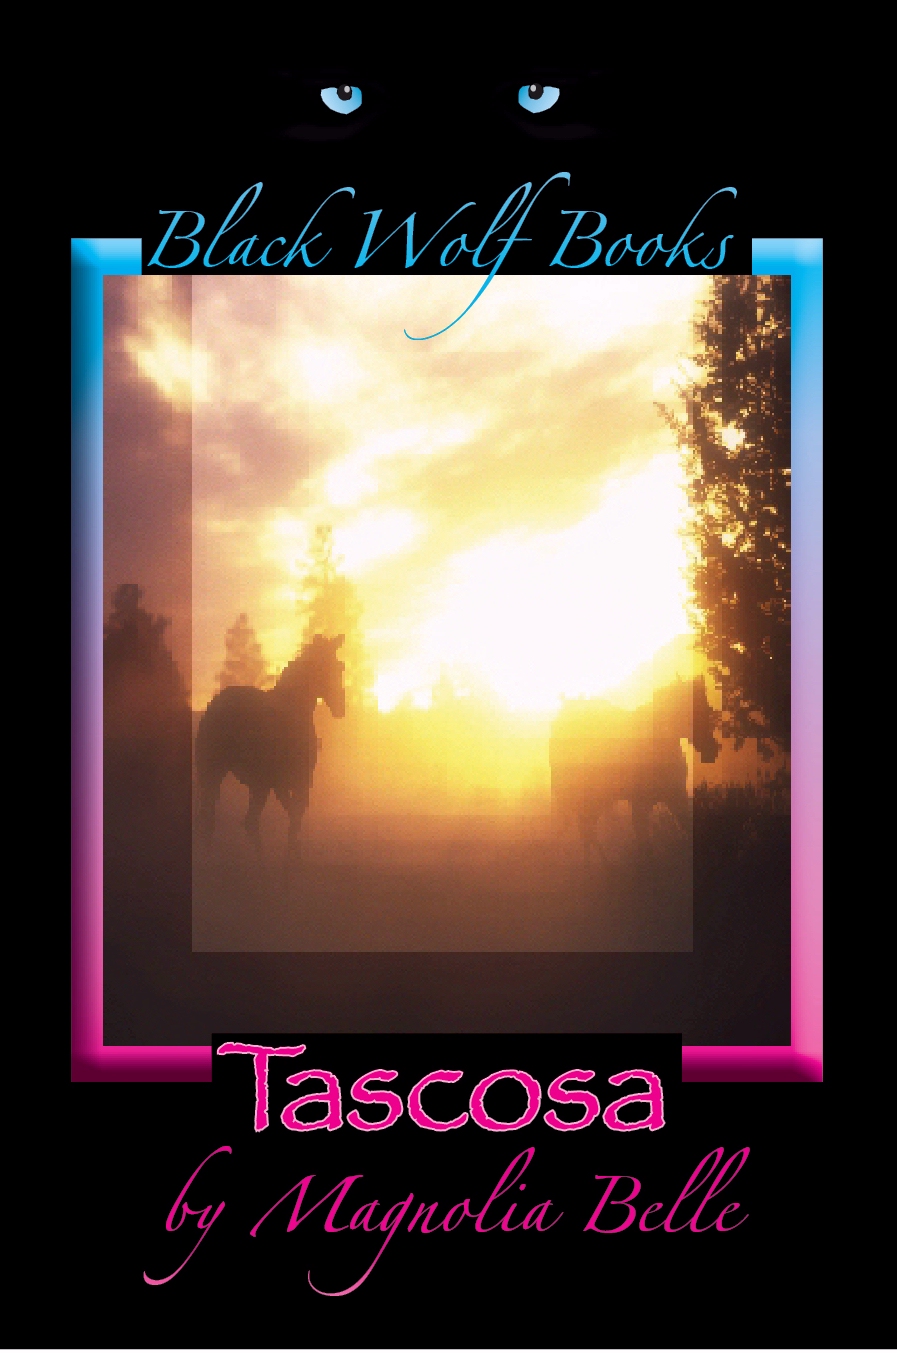 Tascosa